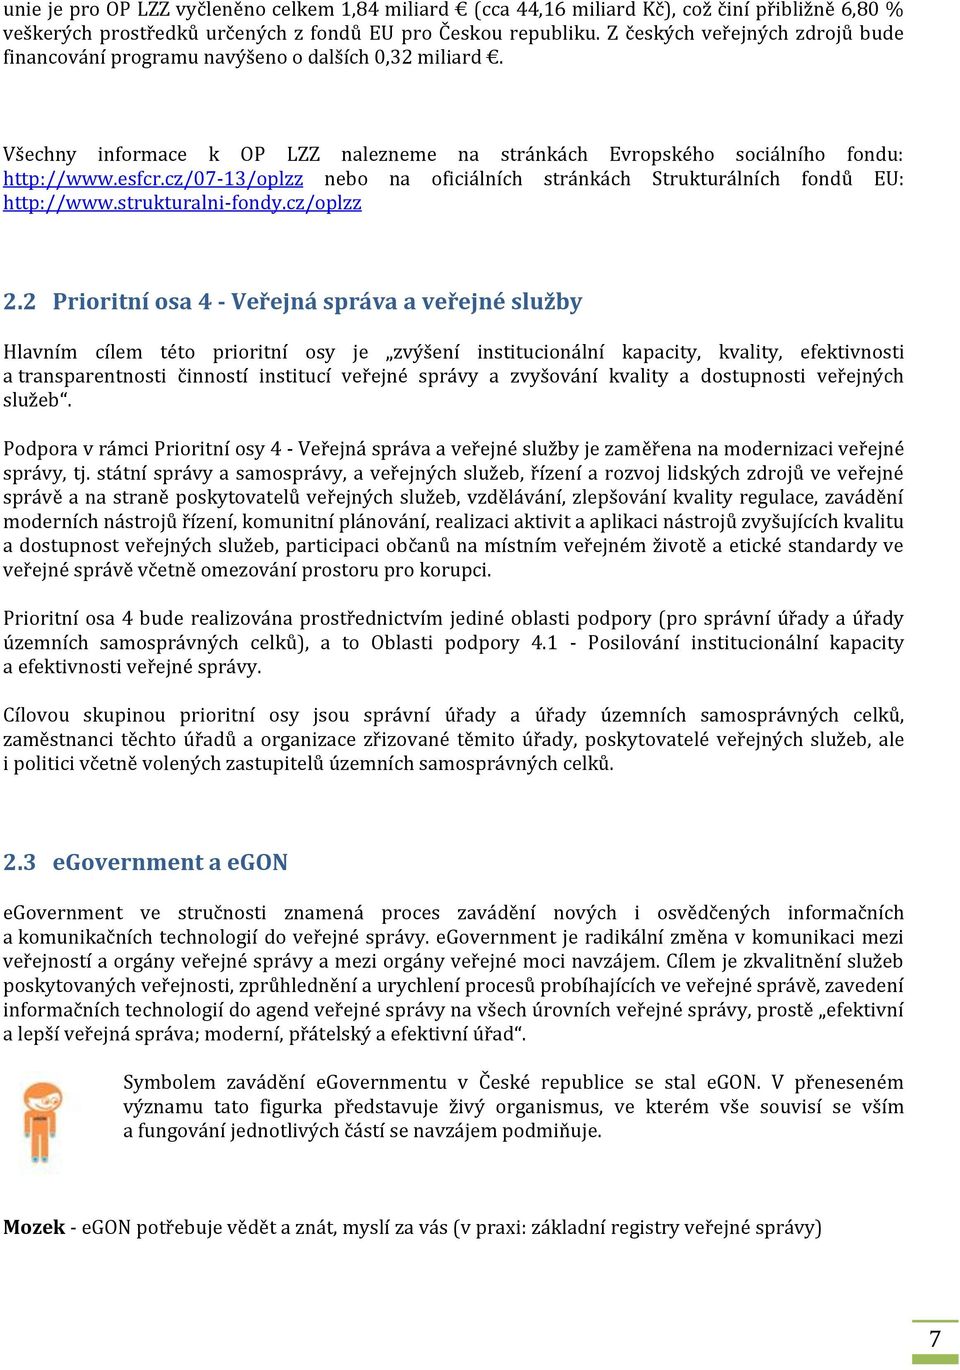 cz/07-13/oplzz nebo na oficiálních stránkách Strukturálních fondů EU: http://www.strukturalni-fondy.cz/oplzz 2.